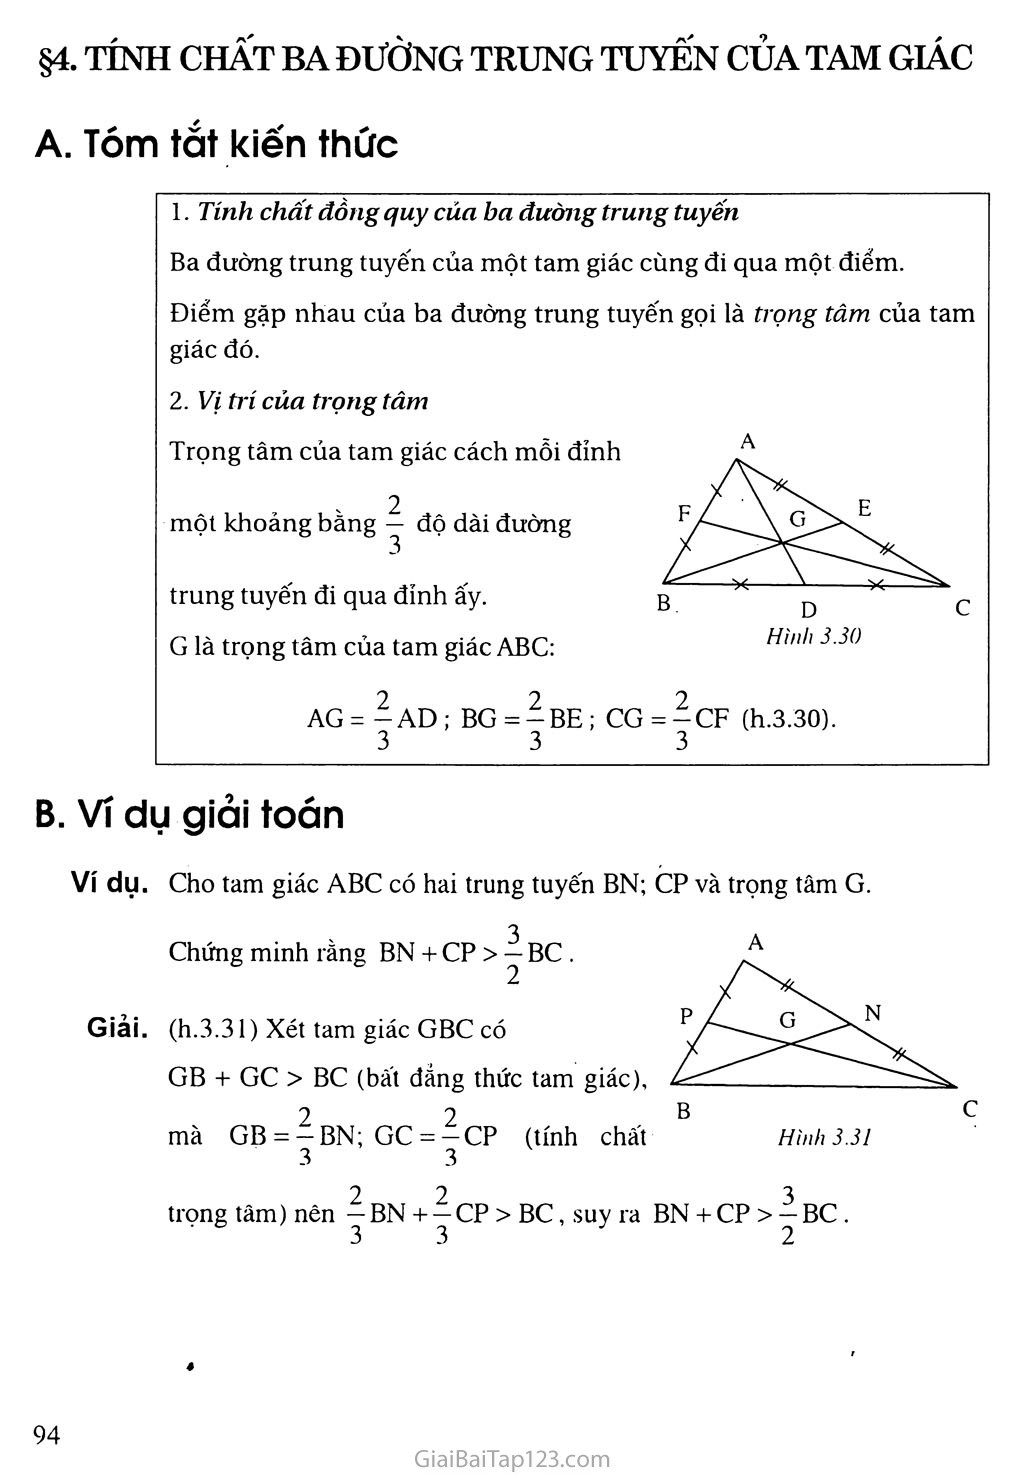 Giải toán 7 Bài 4. Tình hóa học phụ vương đàng trung tuyến của tam giác